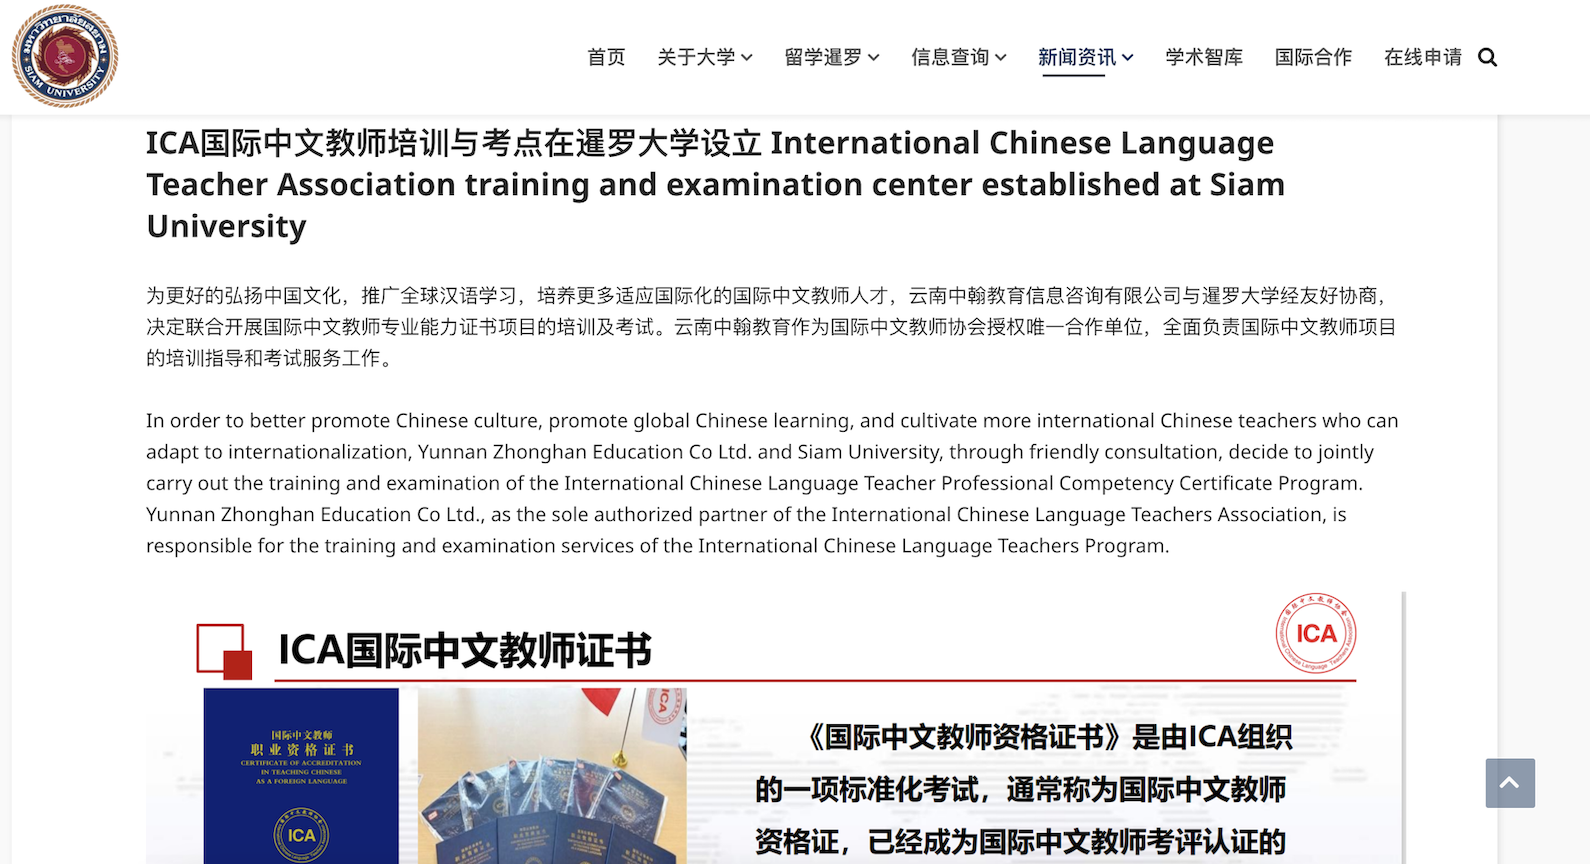  好消息 ｜ ICA国际中文教师培训与考点在暹罗大学设立